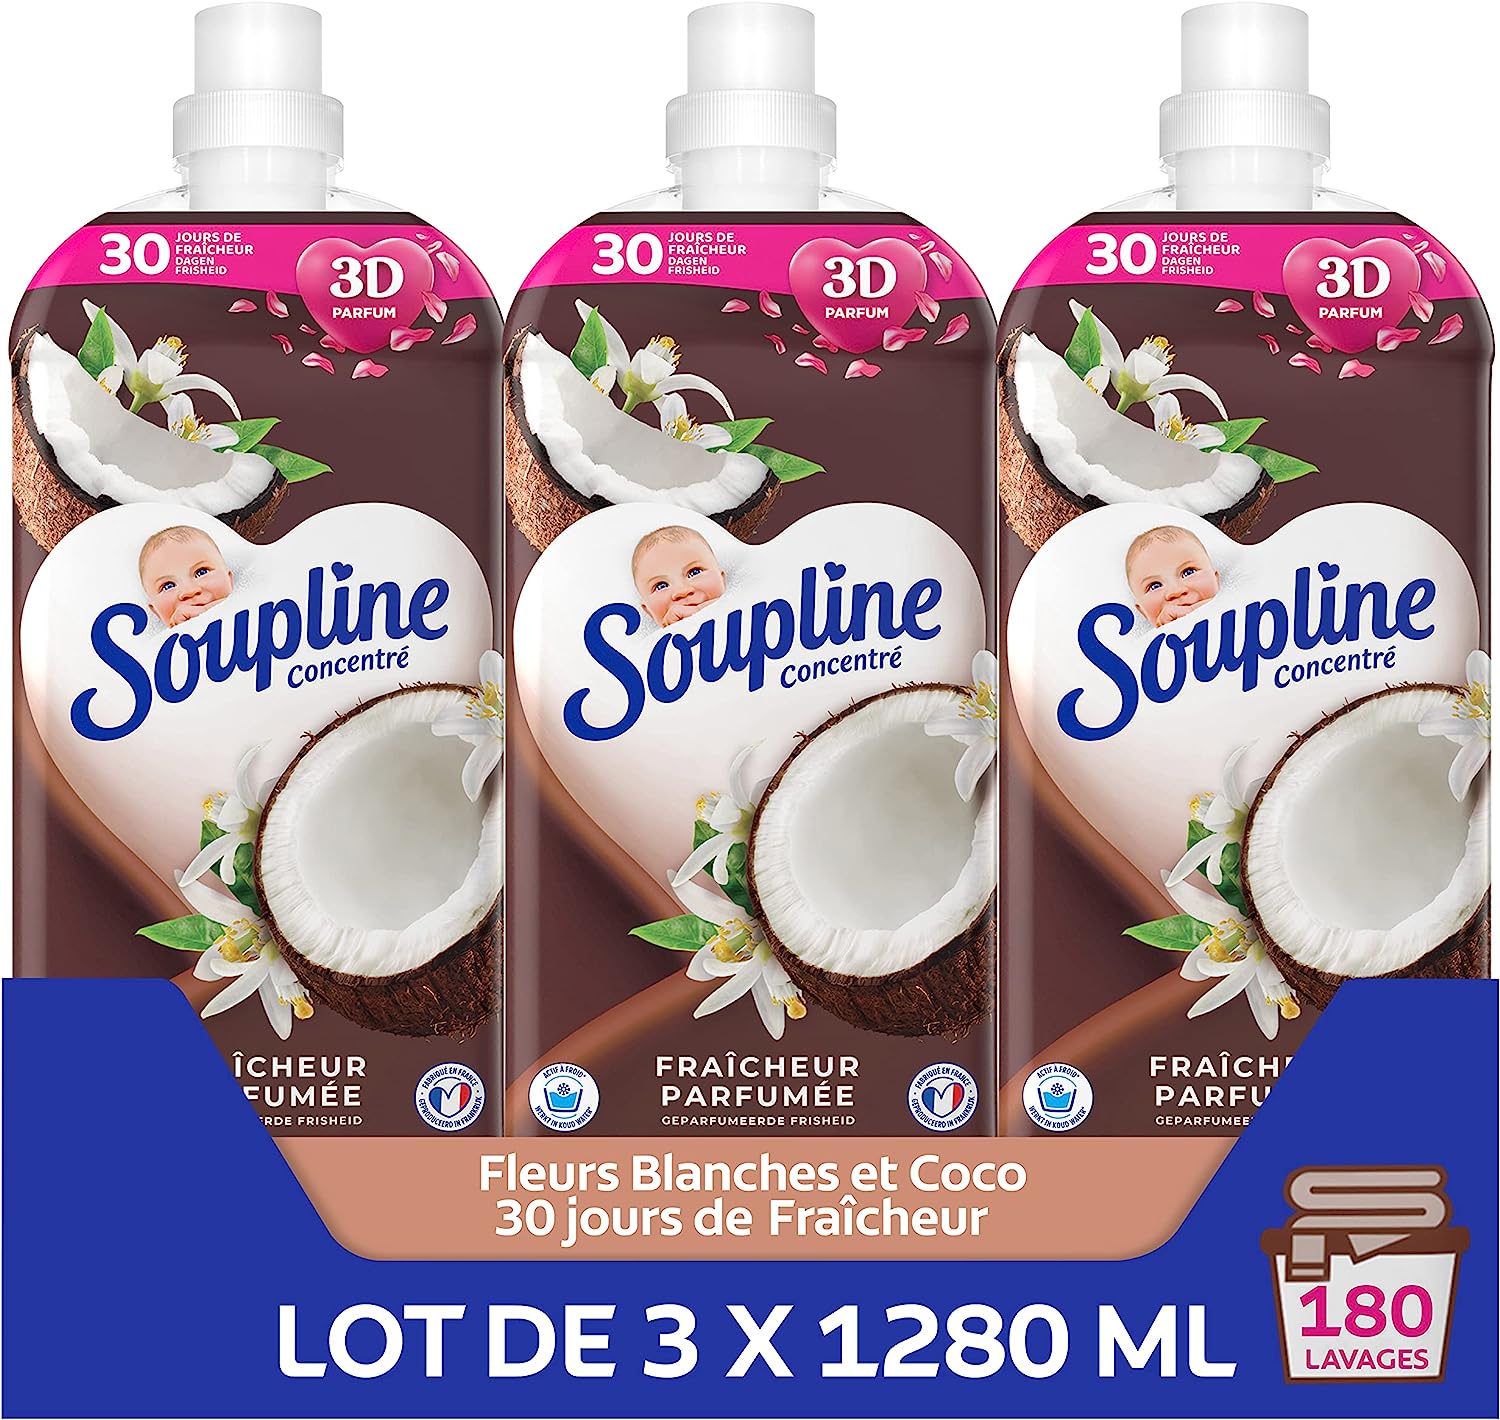 deal - Lot de 3 x 1,280 - SOUPLINE - 180 lavages Coco 3D 13,11€ sur